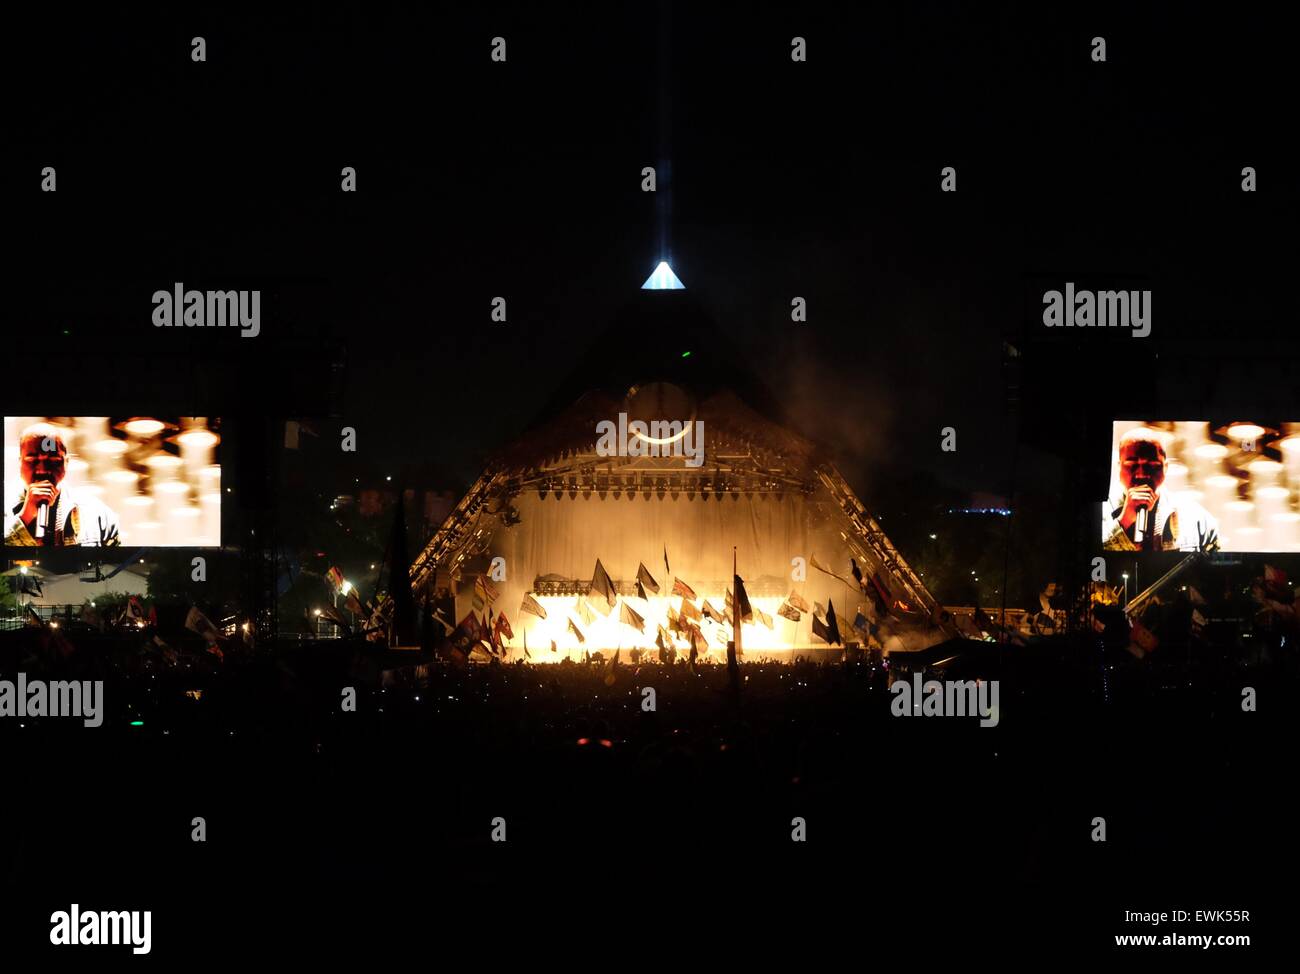 Festival de Glastonbury, Somerset, Royaume-Uni. 27 juin 2015. Kanye West une sur la scène de la pyramide à Glastonbury. Le rendement de l'Ouest, qui était intrupted à un moment donné par un envahisseur étape, a reçu un accueil mitigé de la foule. Crédit : Tom Jura/Alamy Live News Banque D'Images